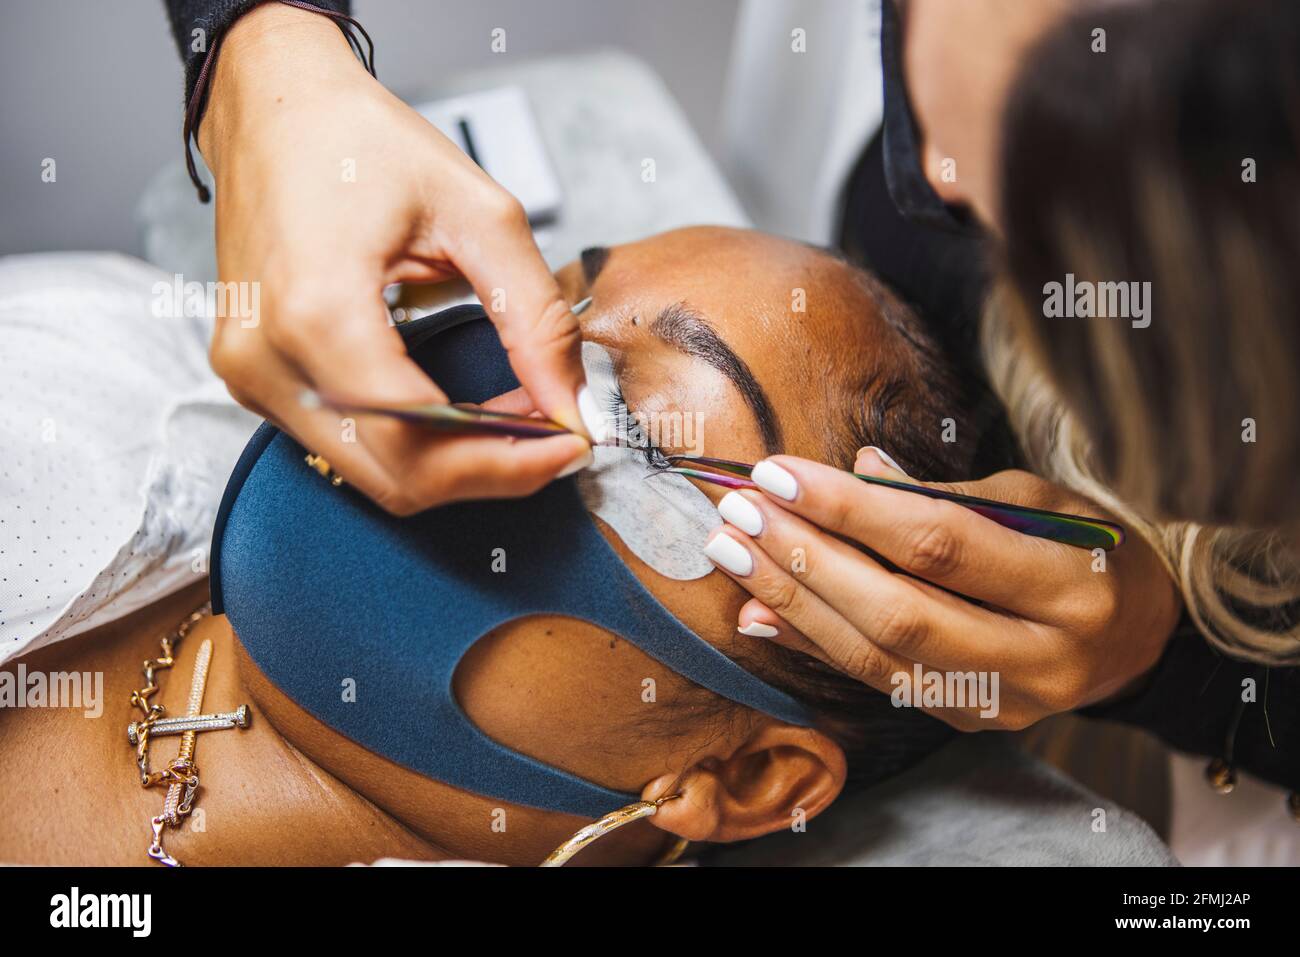 Hoher Winkel der Ernte unkenntlich Kosmetologe mit Pinzette Anwendung gefälschte Wimpern zur Erweiterung auf das Auge des ethnischen Kunden mit Gesicht Schutzmaske Stockfoto